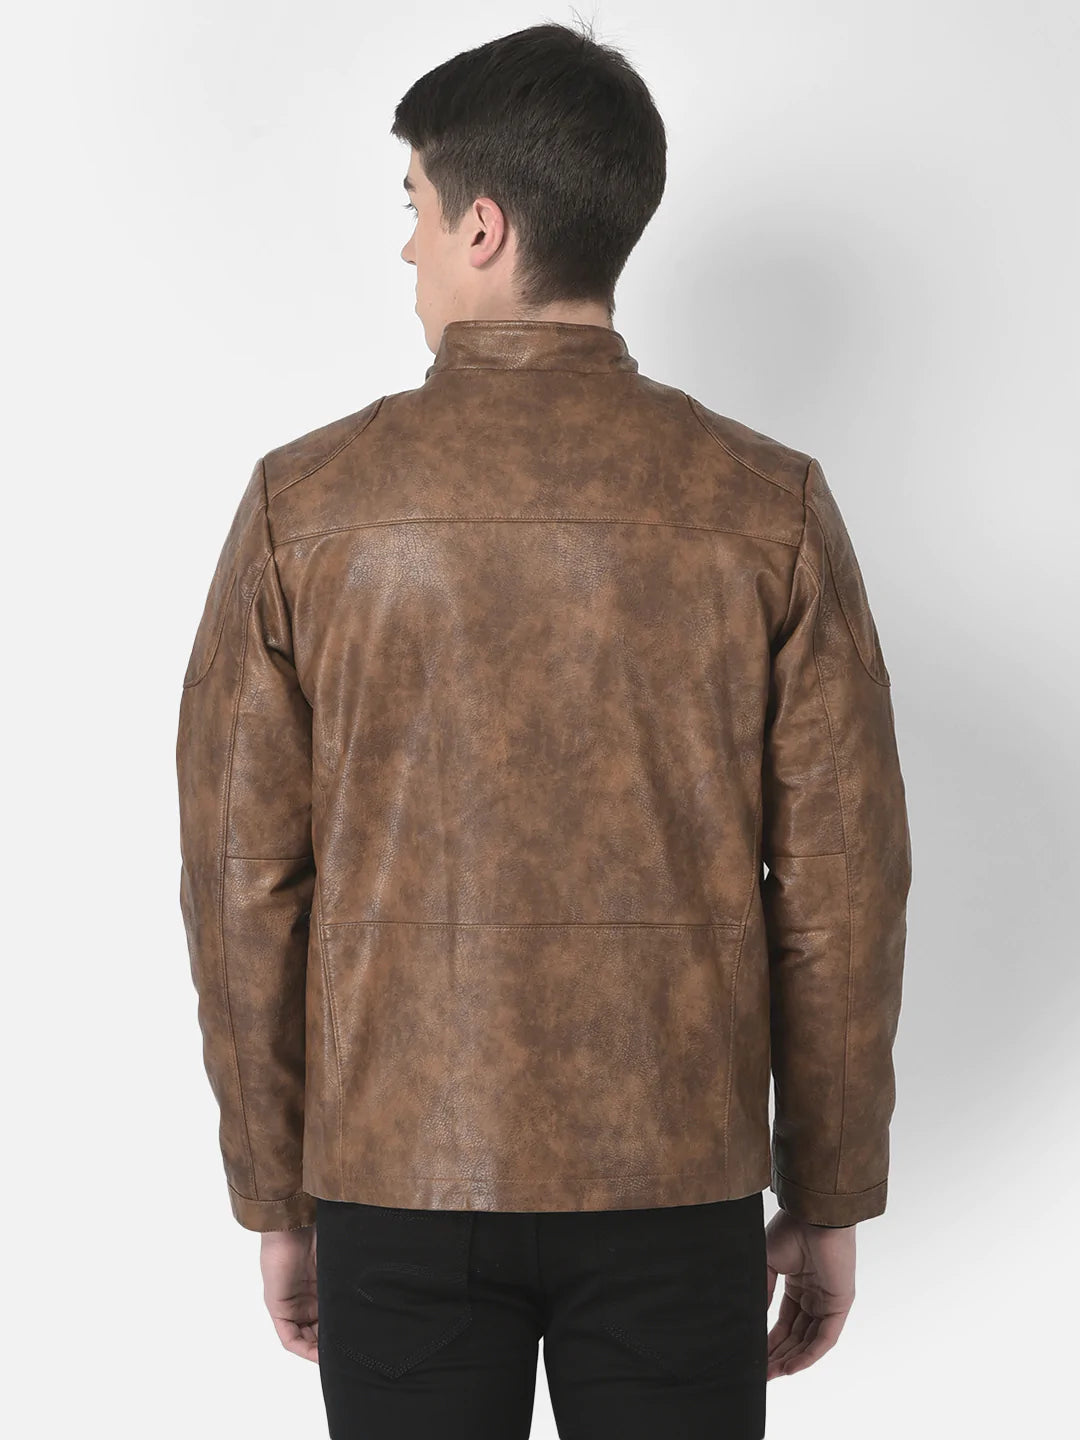  Tan Tie-Dye Effect Leather Jacket